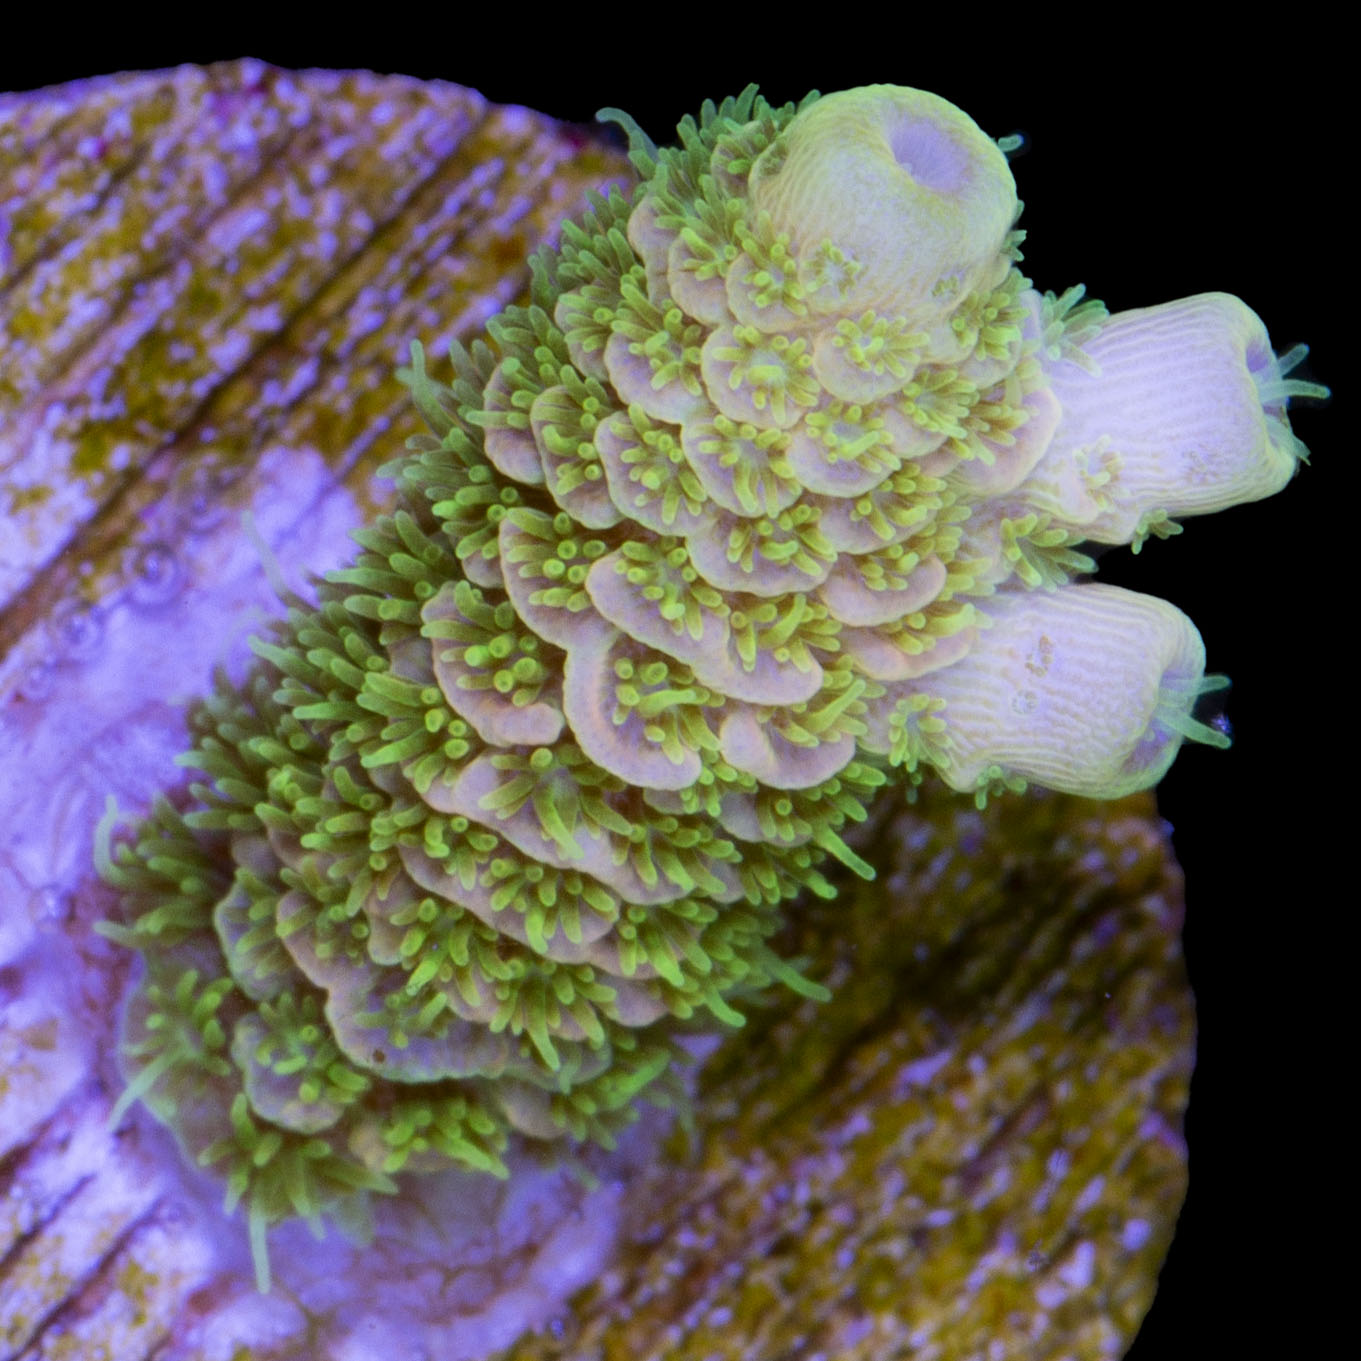 Sunrise Millepora Acropora Coral